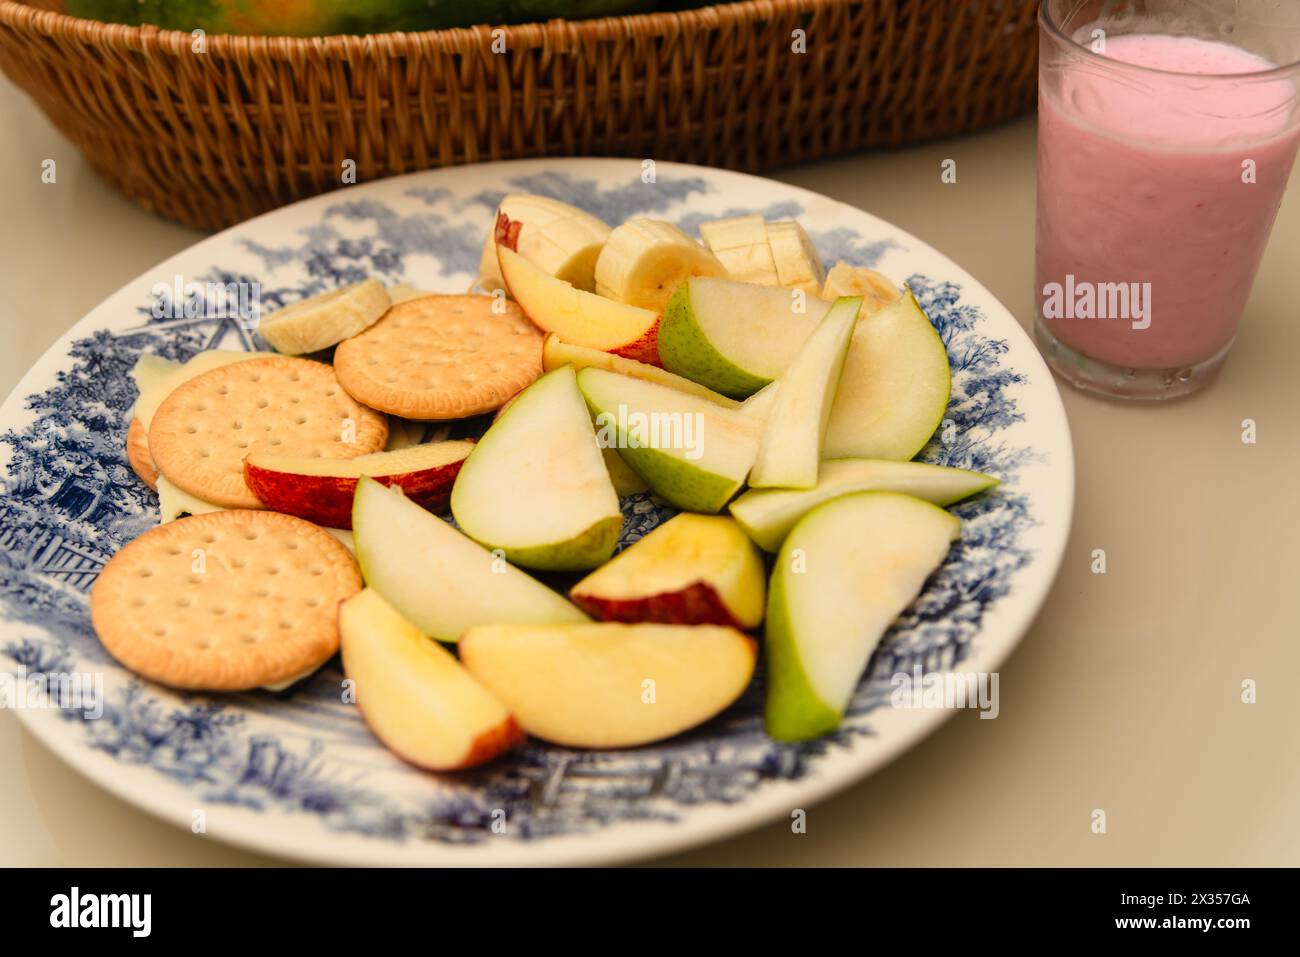 Assiette de petit déjeuner avec banane, pomme, poire, biscuit, fromage et yaourt sur une table. Nourriture saine. Banque D'Images